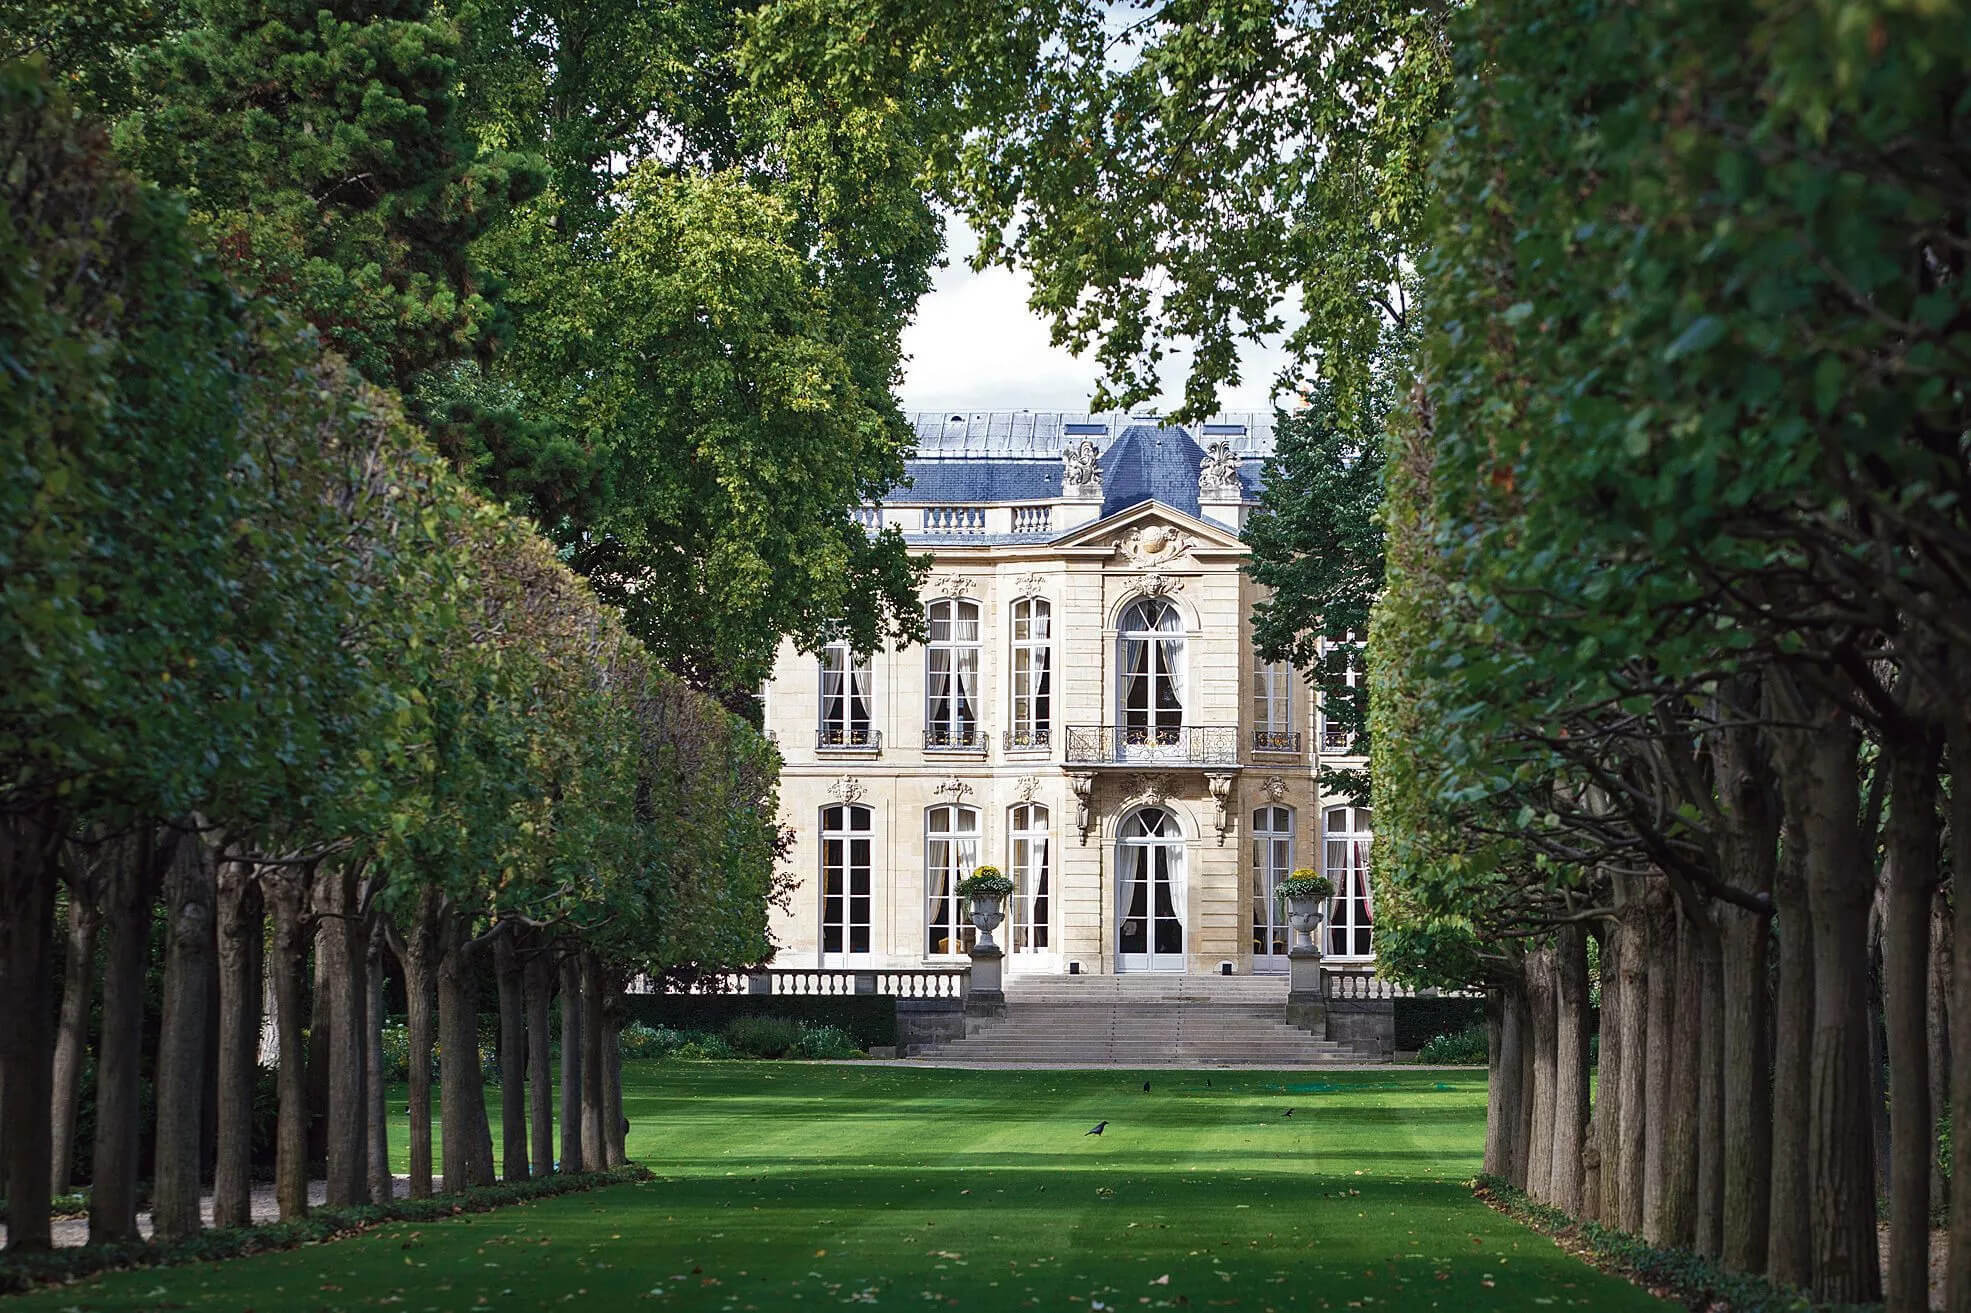 Hôtel Matignon (résidence officielle du Premier ministre français) - 57 Rue de Varenne, 75007 Paris